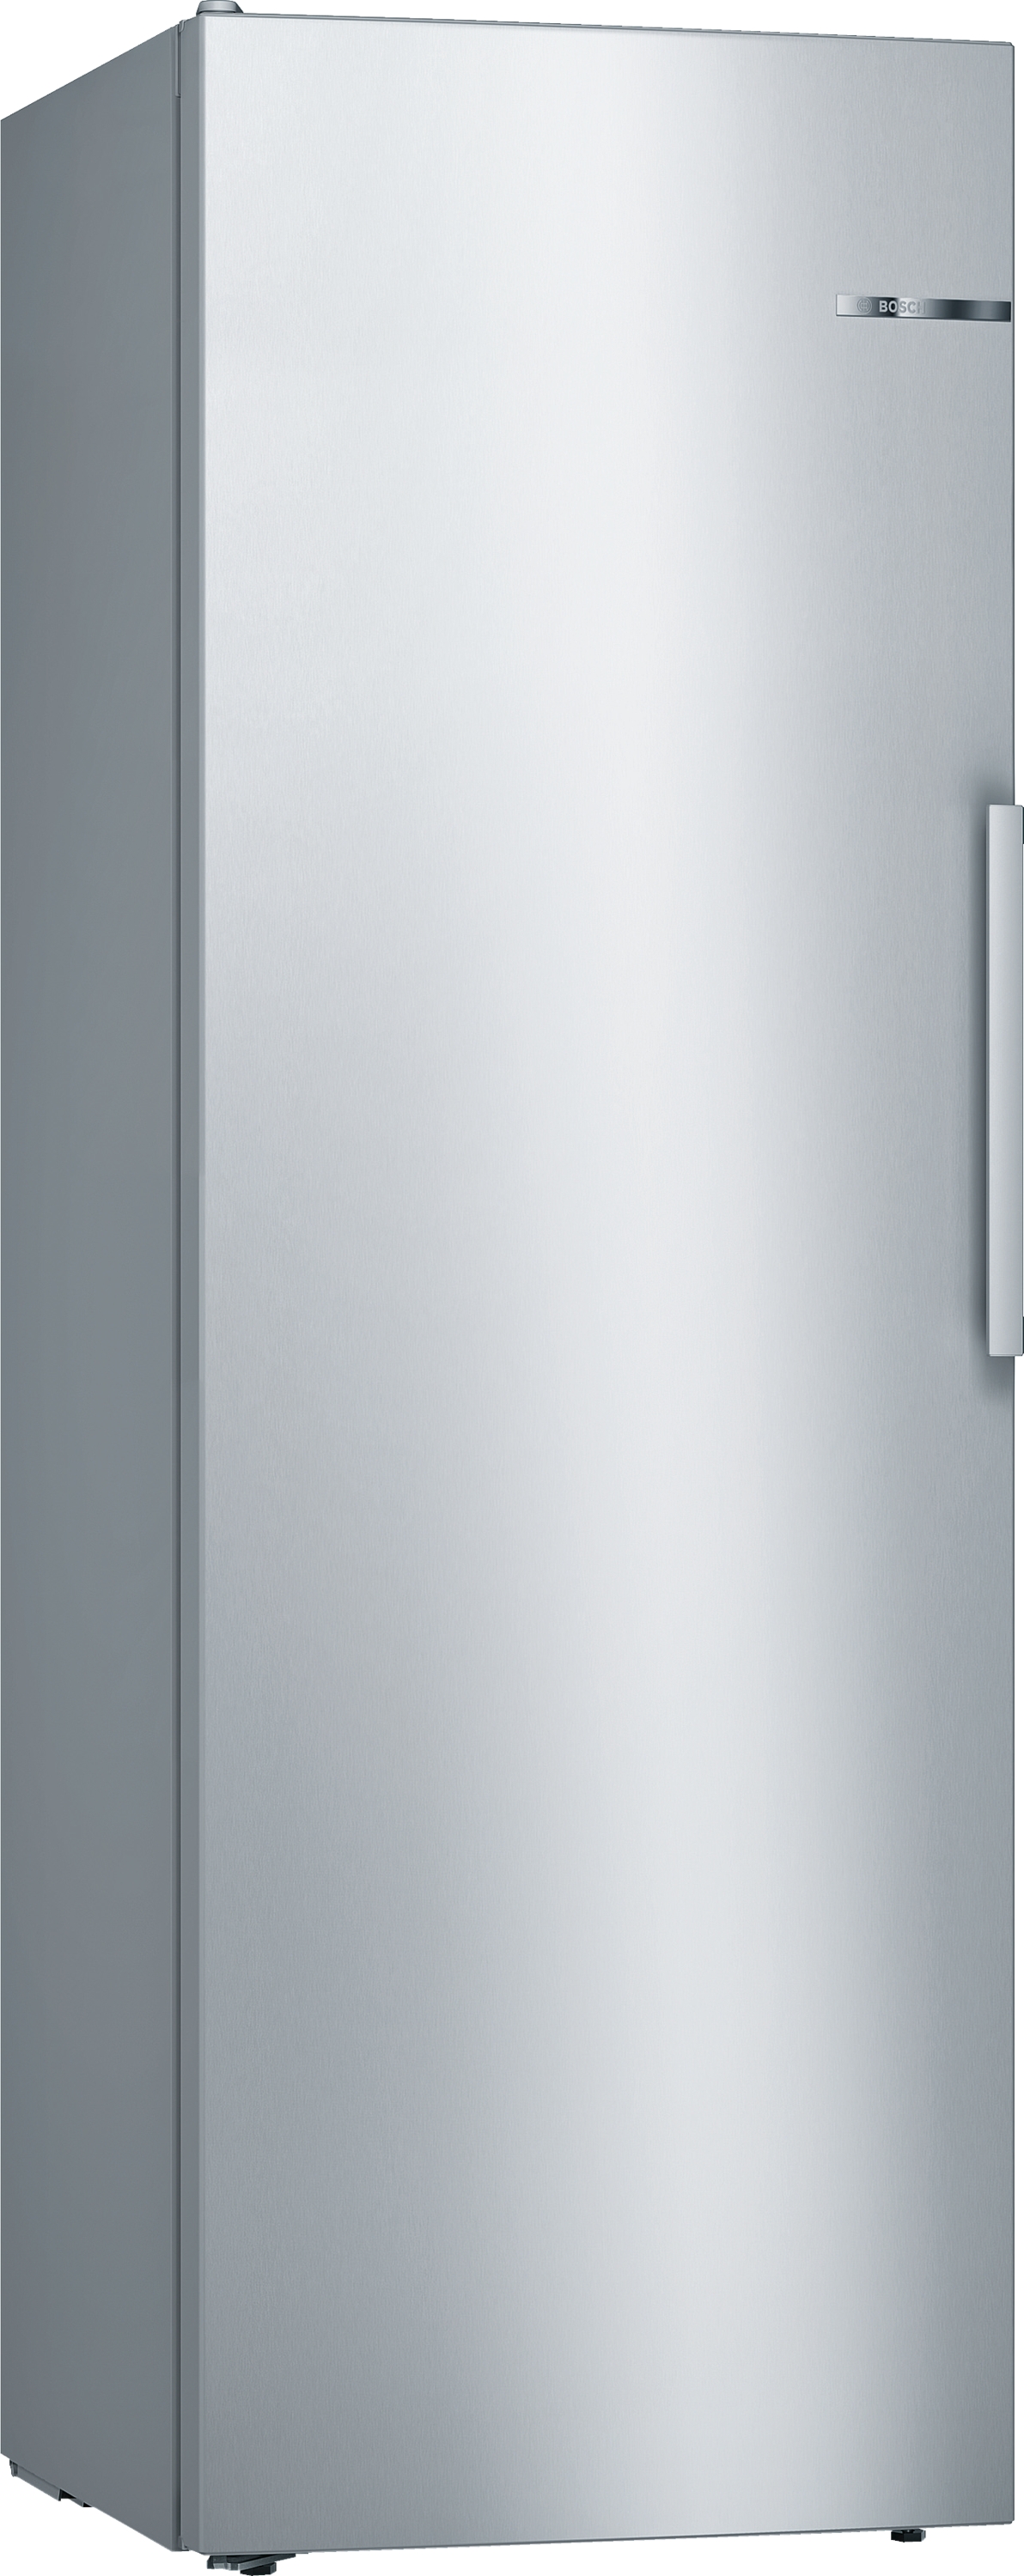 Bosch KSV33VLEP  Szabadonálló hűtőkészülék